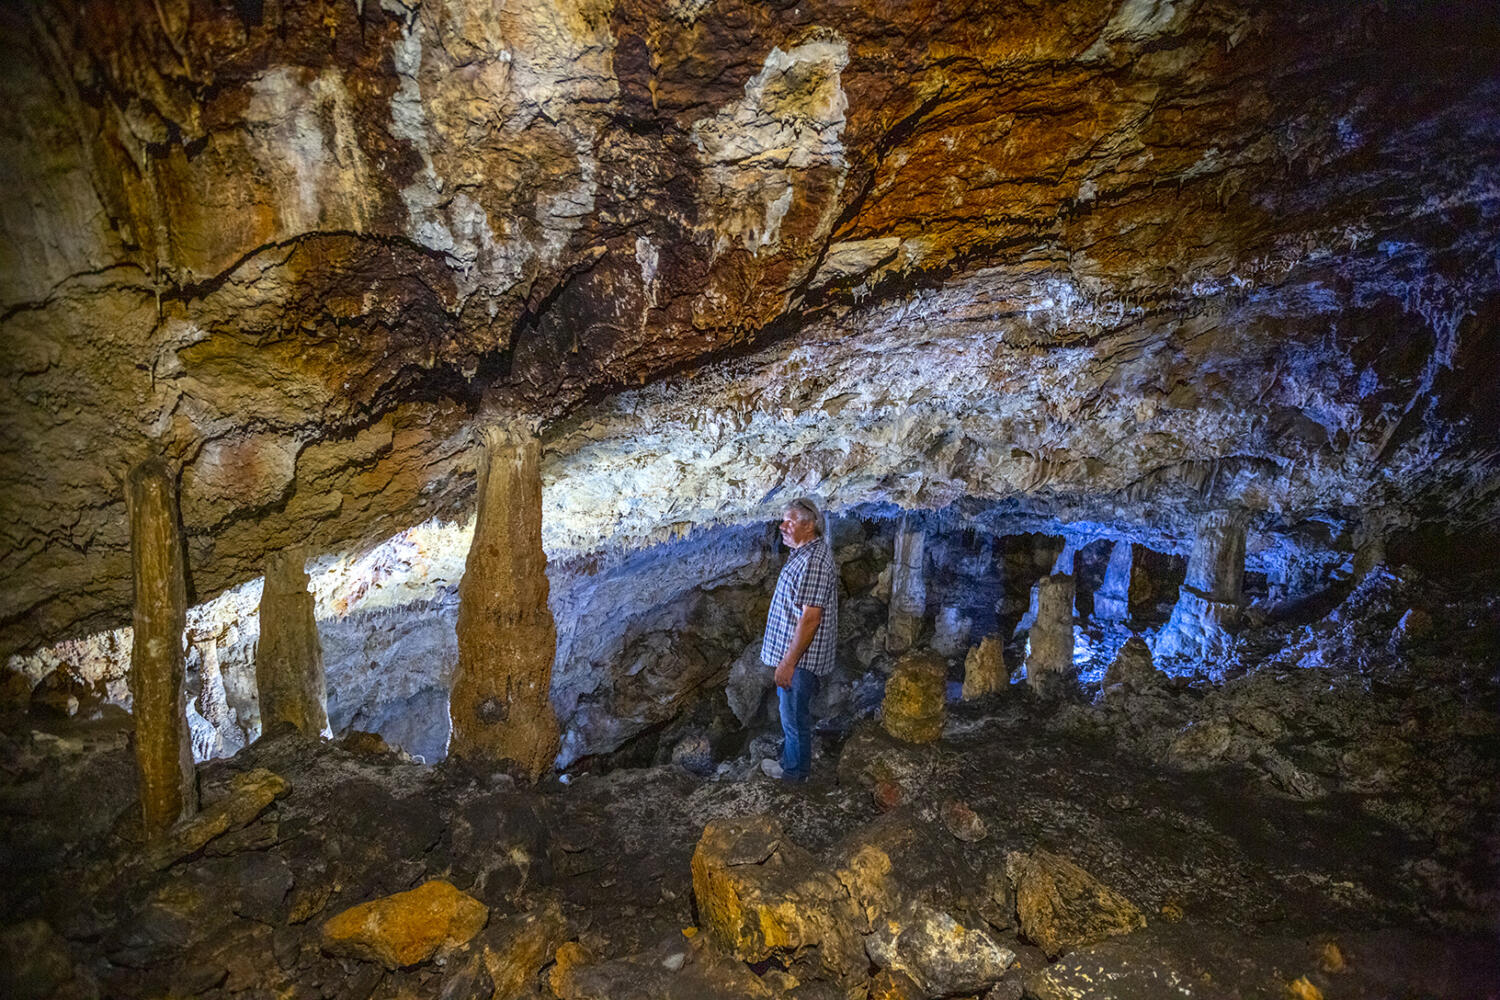 Σπήλαιο Σκοτεινή, χωριό Θαρούνια. Φωτογραφία: ©Βασίλης Συκάς, για τον Δήμο Κύμης-Αλιβερίου